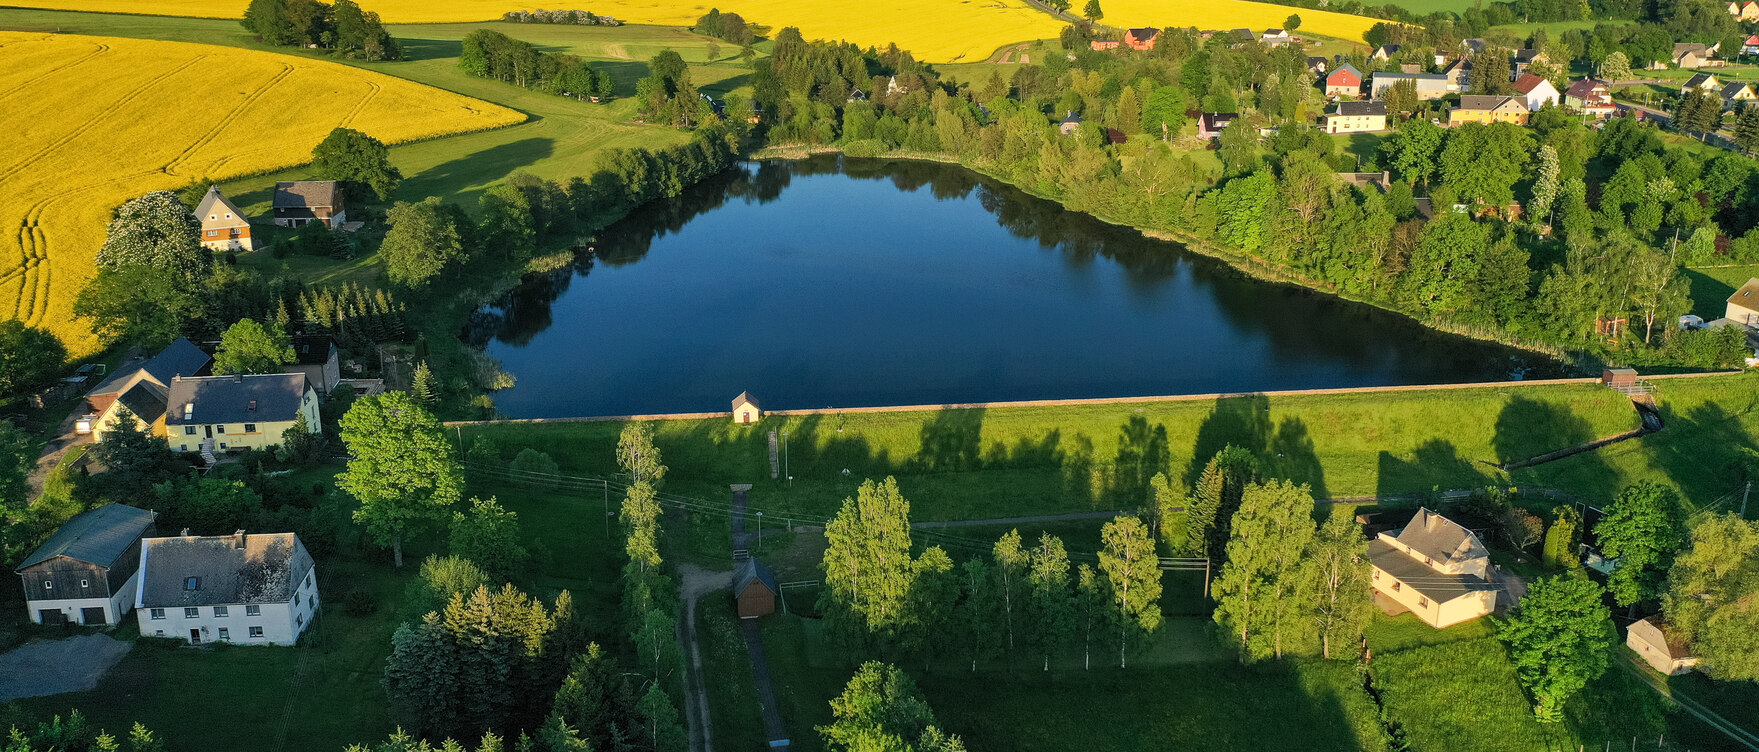 Luftbild von einem See umgeben von Wiesen und Feldern